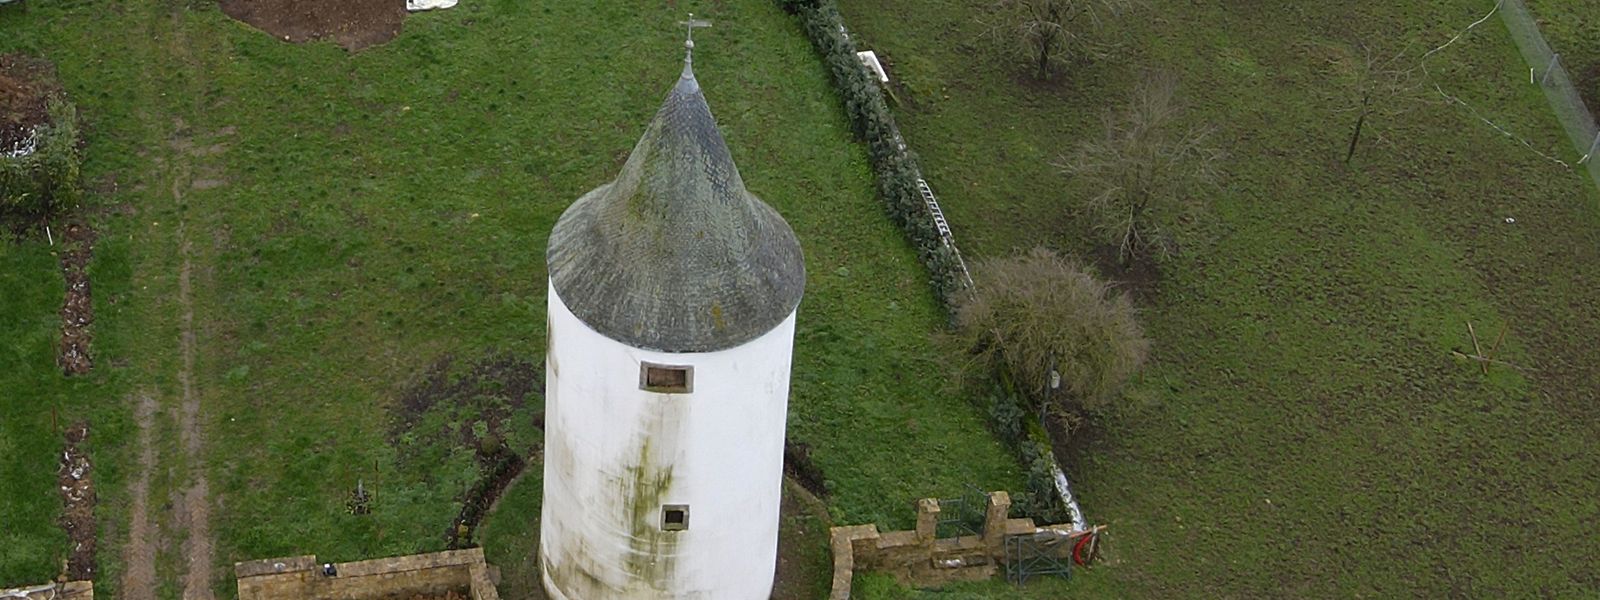 Der Turm steht auf dem Gelände des Hofs der Familie Stumper.